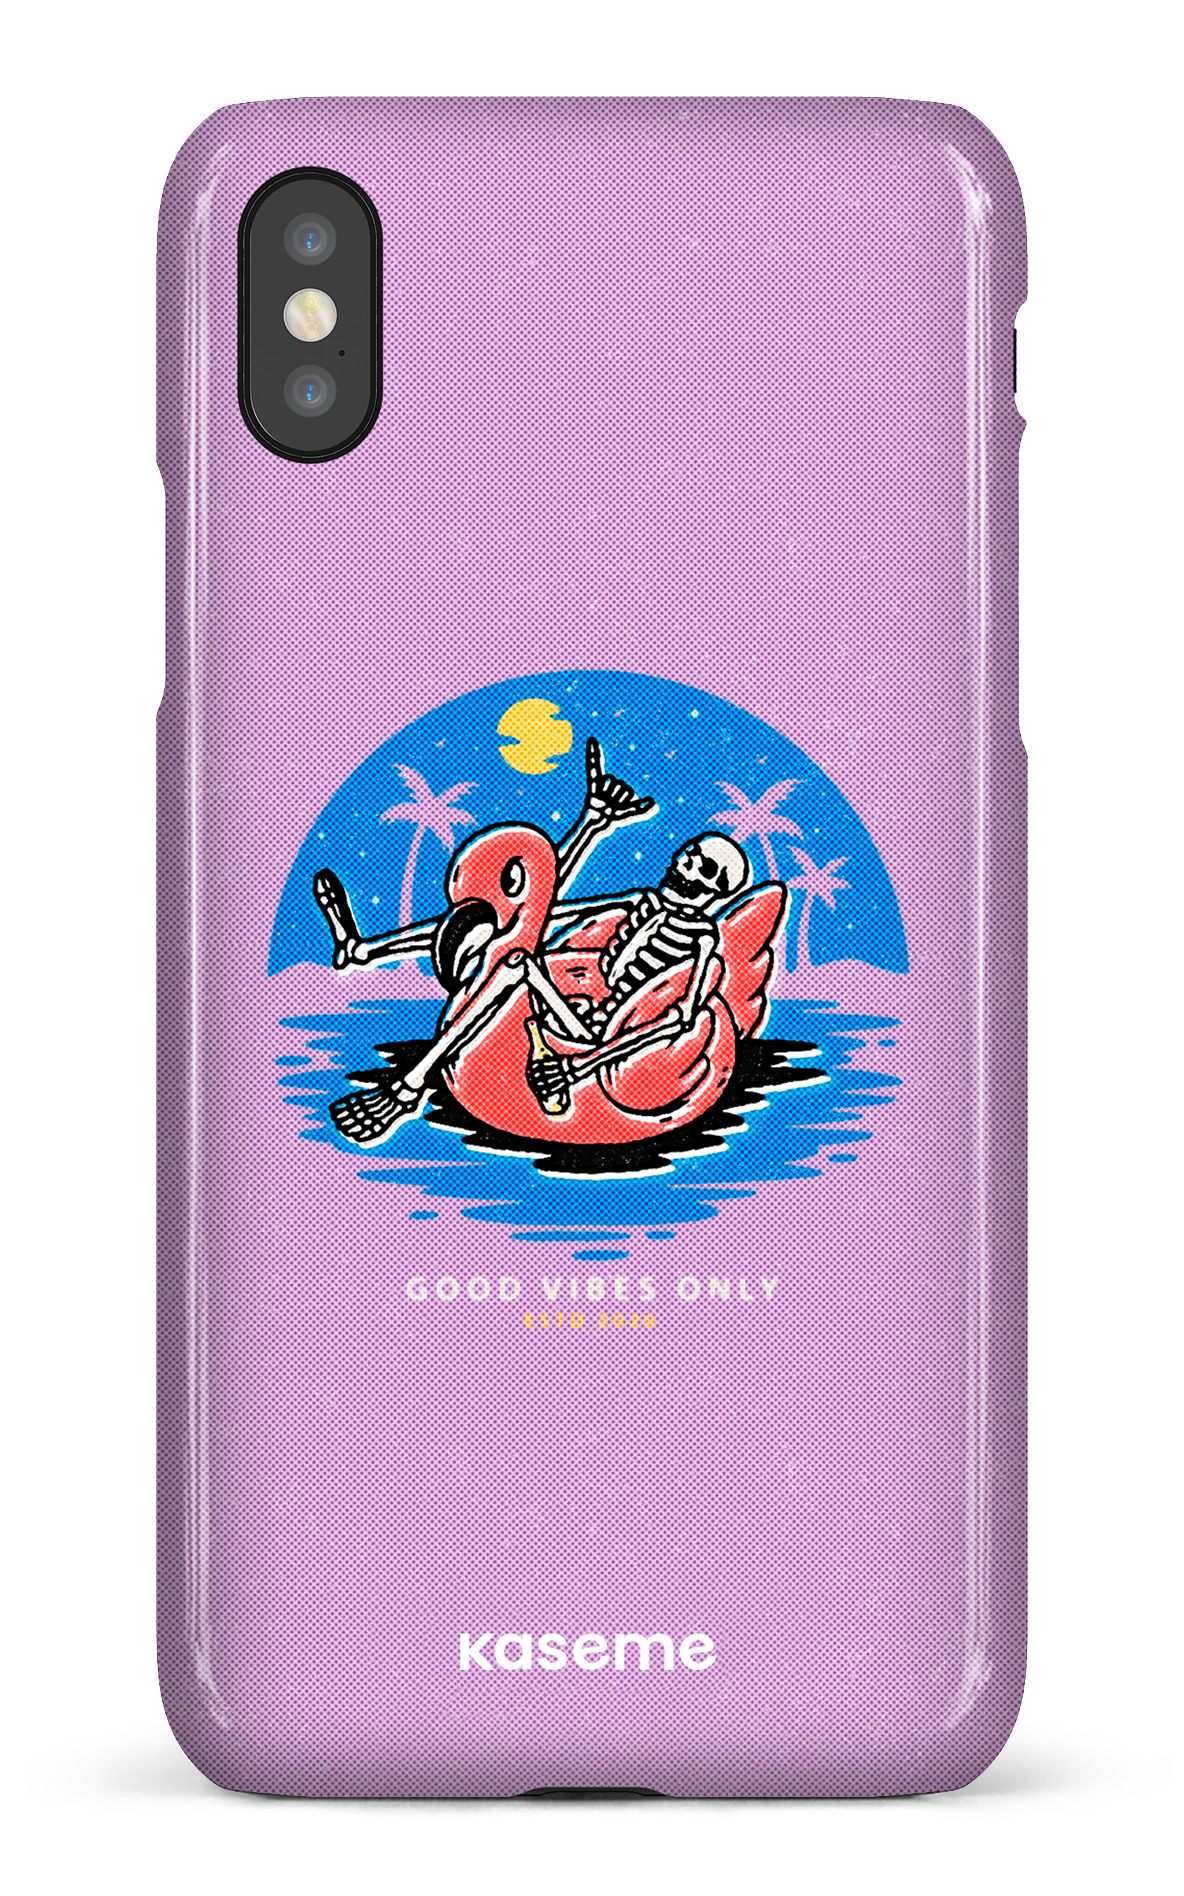 Seaside purple - iPhone X/XS